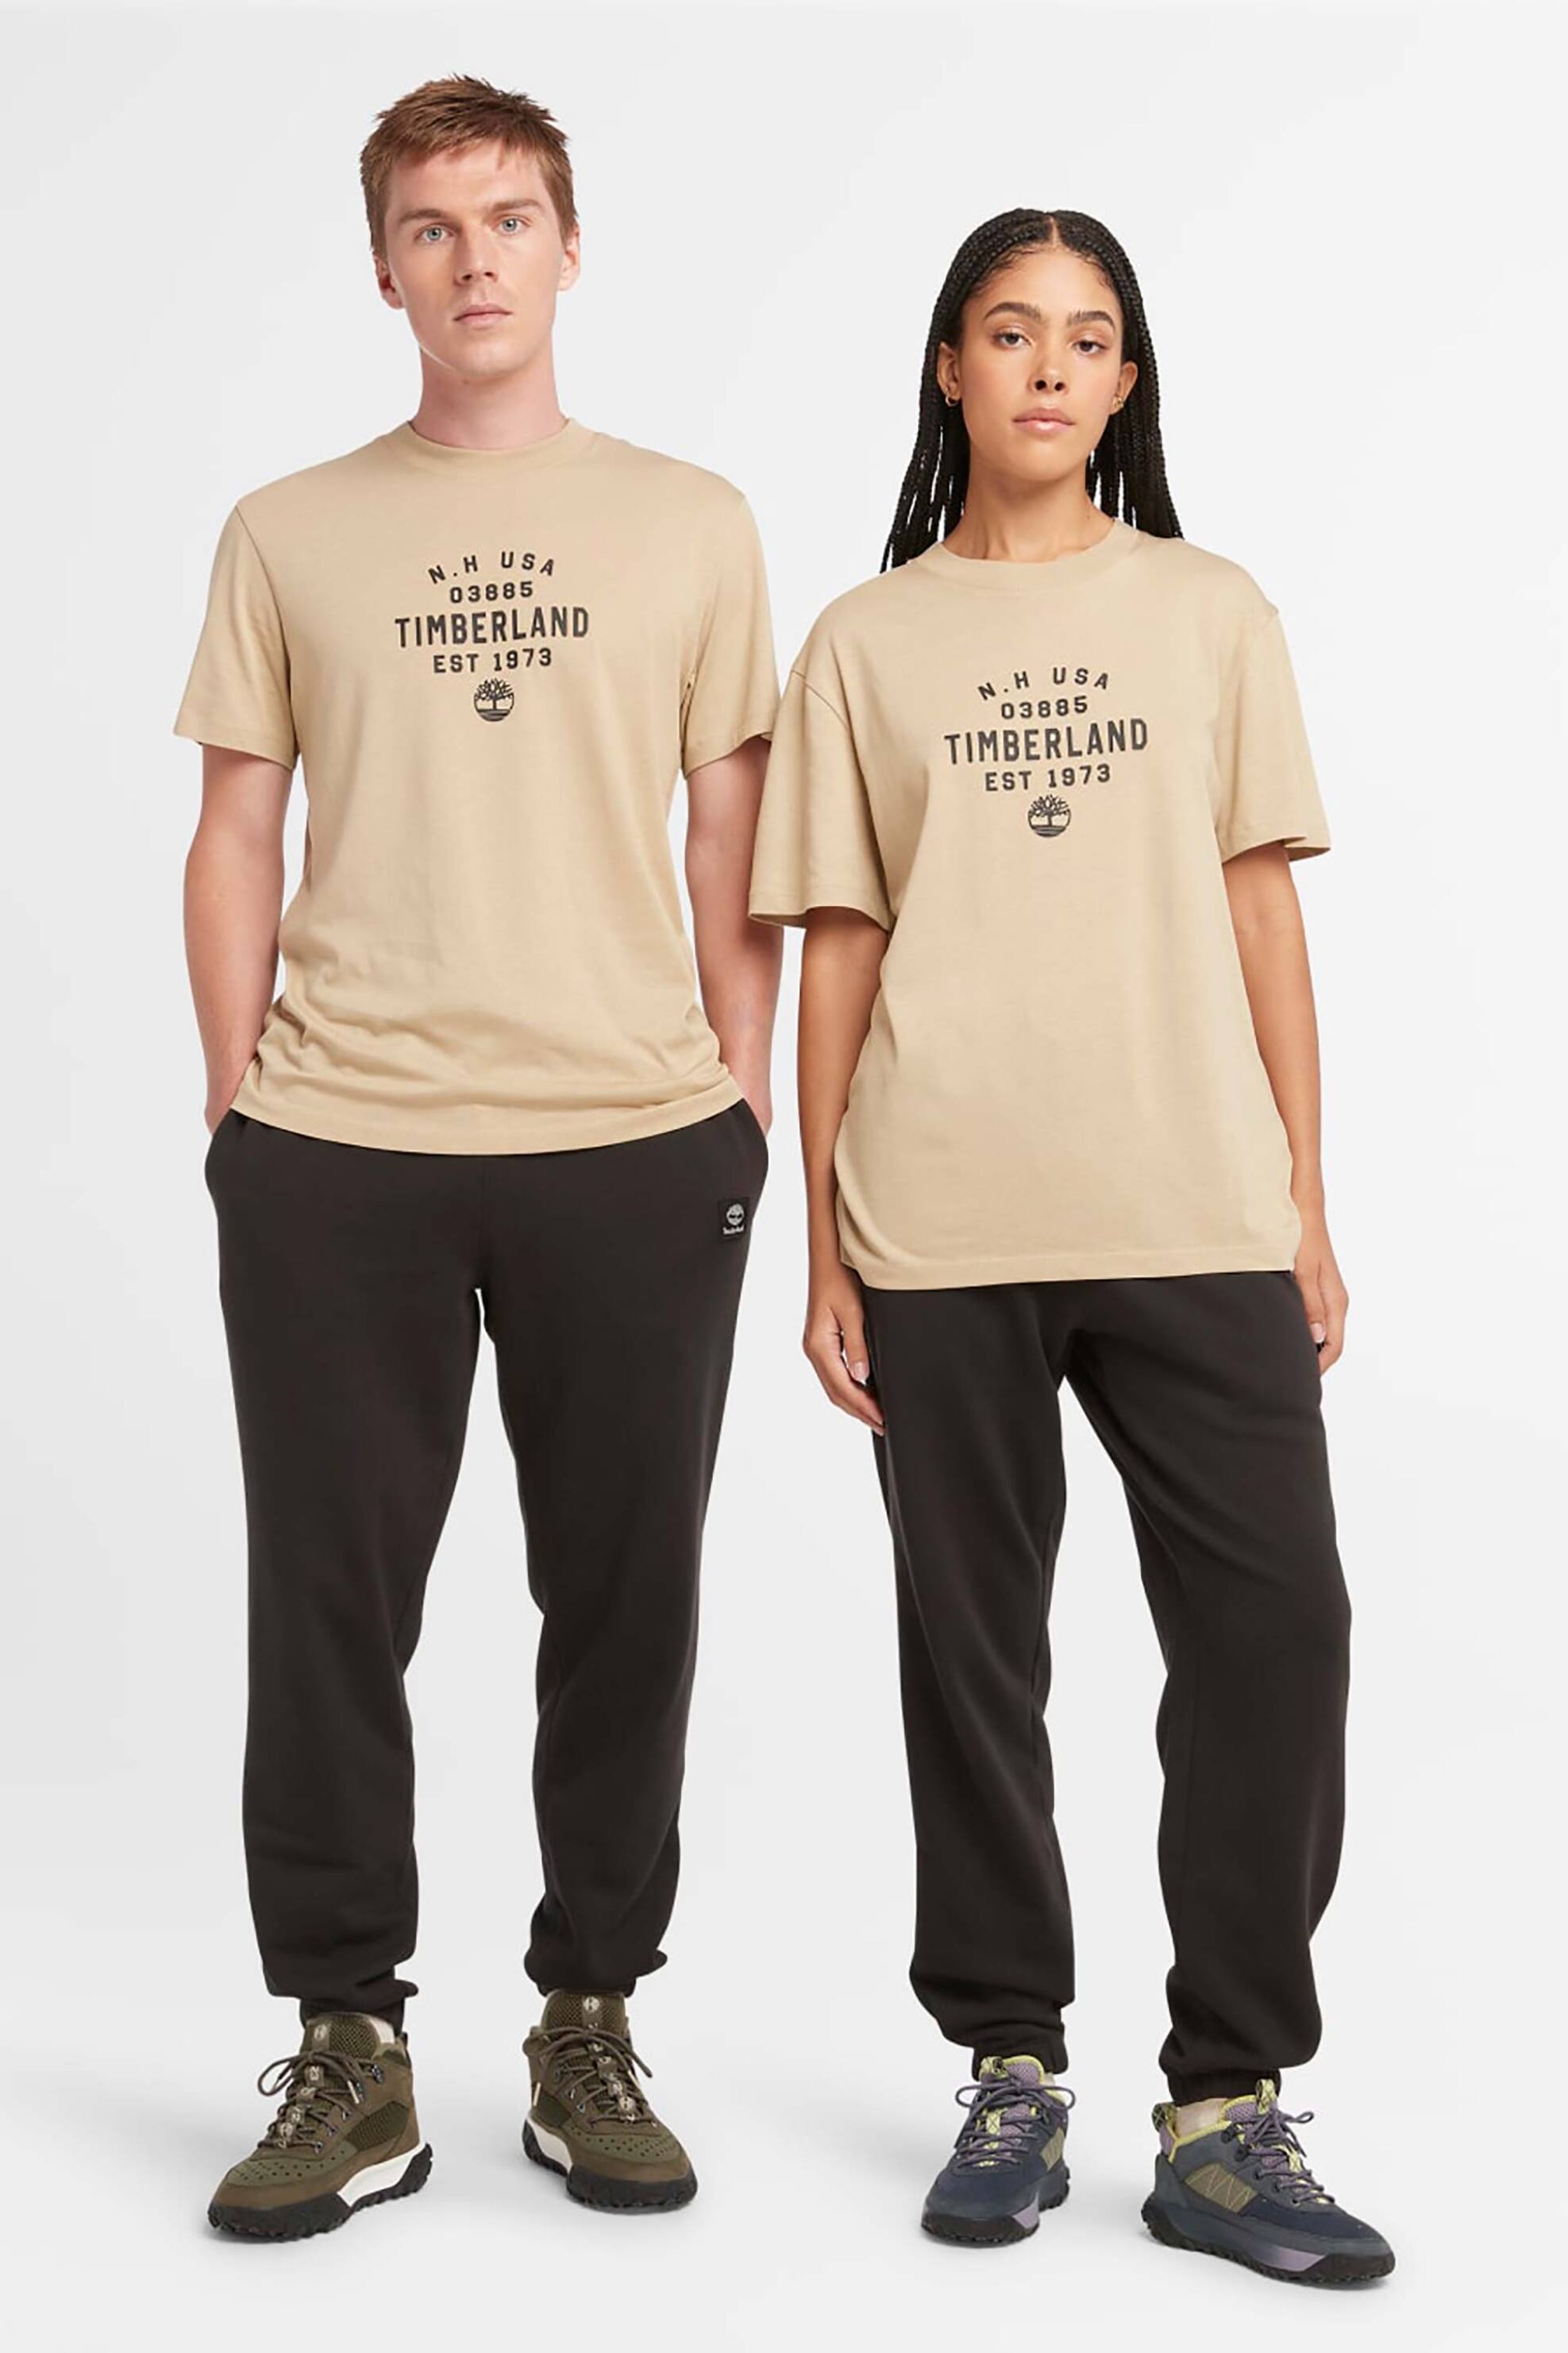 Ανδρική Μόδα > Ανδρικά Ρούχα > Ανδρικές Μπλούζες > Ανδρικά T-Shirts Timberland unisex T-shirt μονόχρωμο με contrast logo print και lettering - TB0A5UF7DH41 Μπεζ